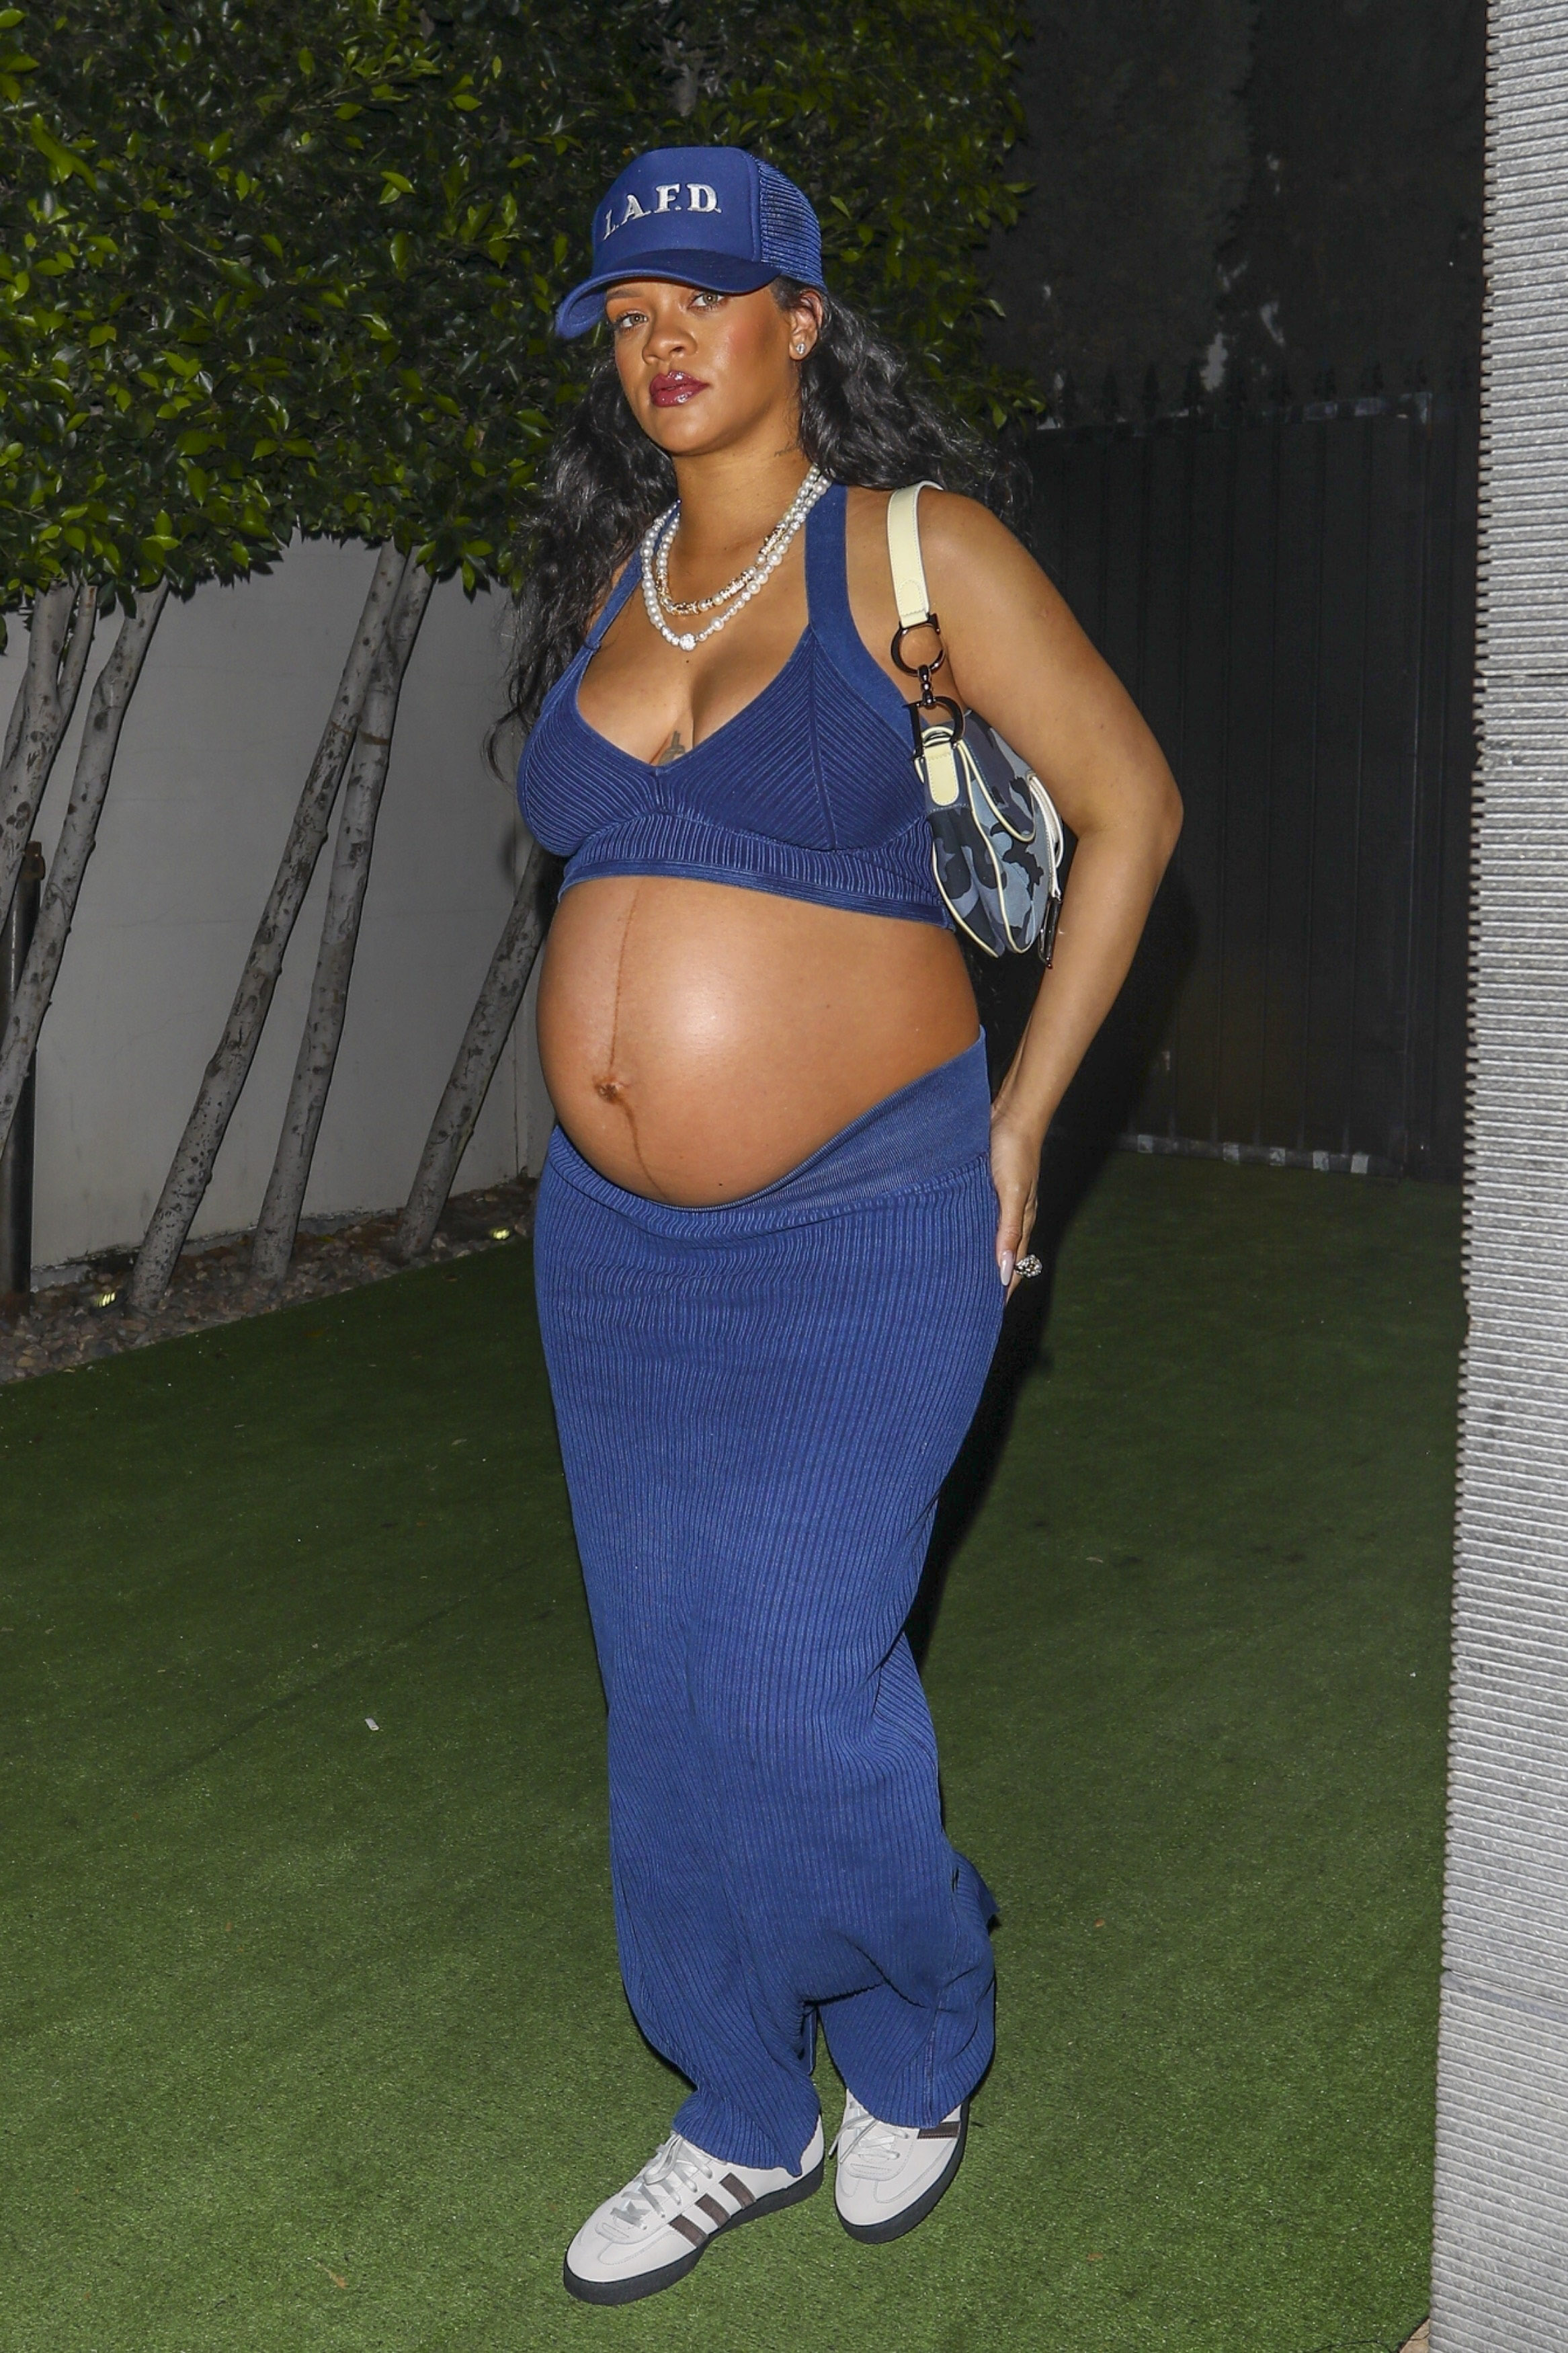 Noche romántica. Rihanna y A$AP Rocky fueron a comer al exclusivo restaurante Nobu de Los Ángeles. Para ello, la artista lució un conjunto de top y pollera azul, que combinó con su gorra y con el que mostró su panza de embarazo: está esperando su primer hijo con el rapero (Fotos: The Grosby Group)